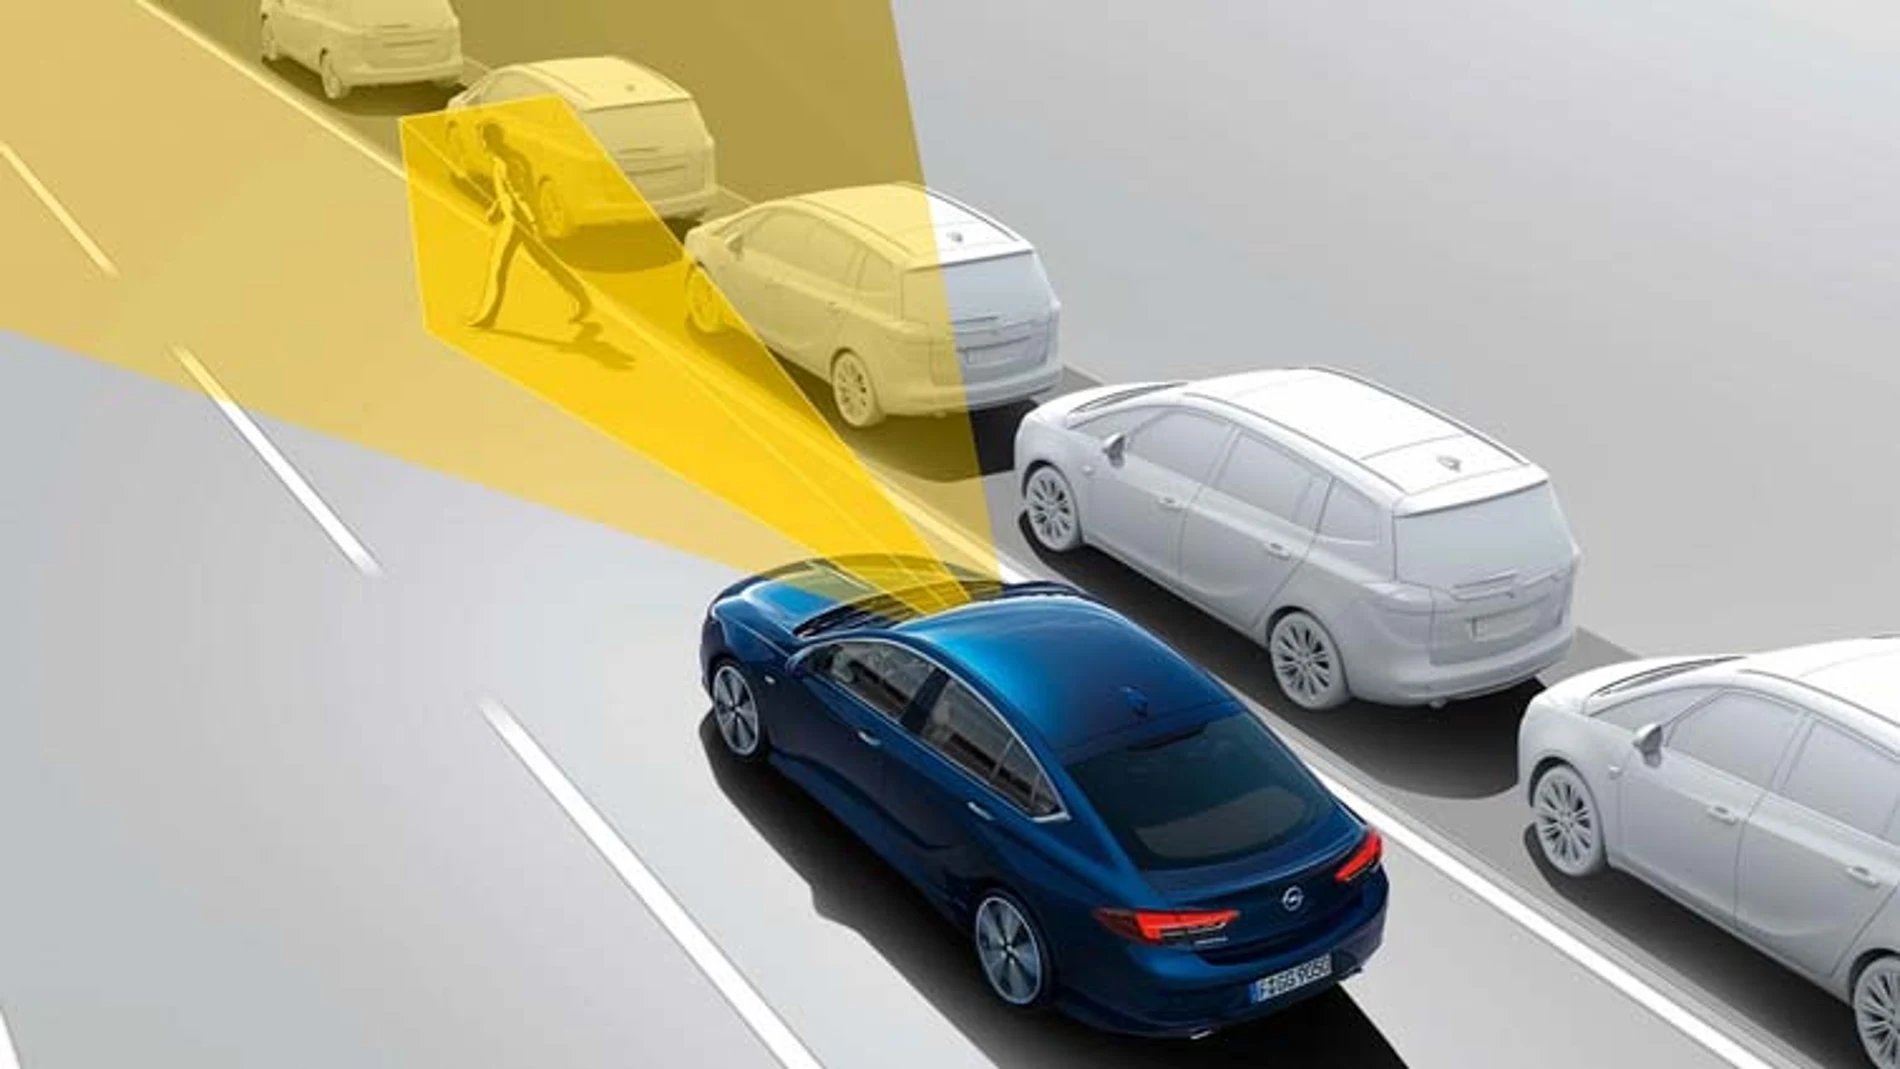 La cámara frontal del Opel Insignia vigila constantemente lo que sucede en la carretera y puede detectar peatones.